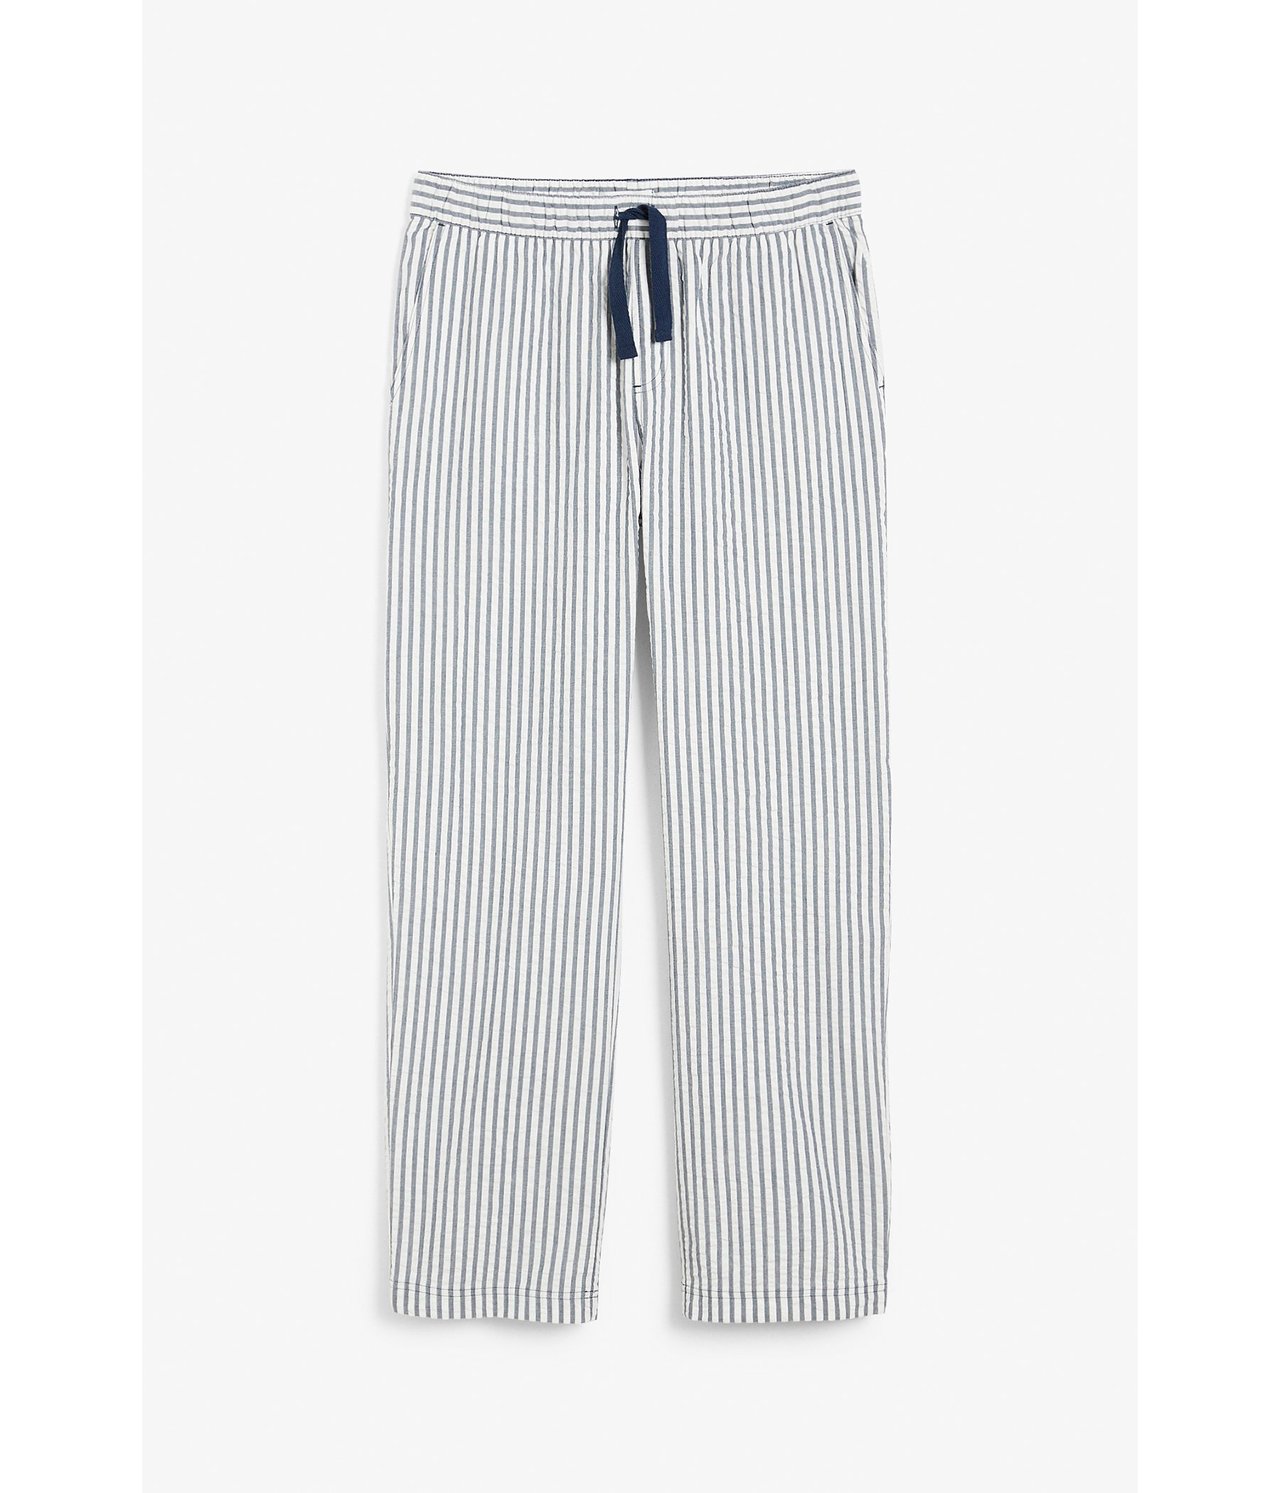 Pyjamasbukse i seersucker Mørkeblå - null - 1